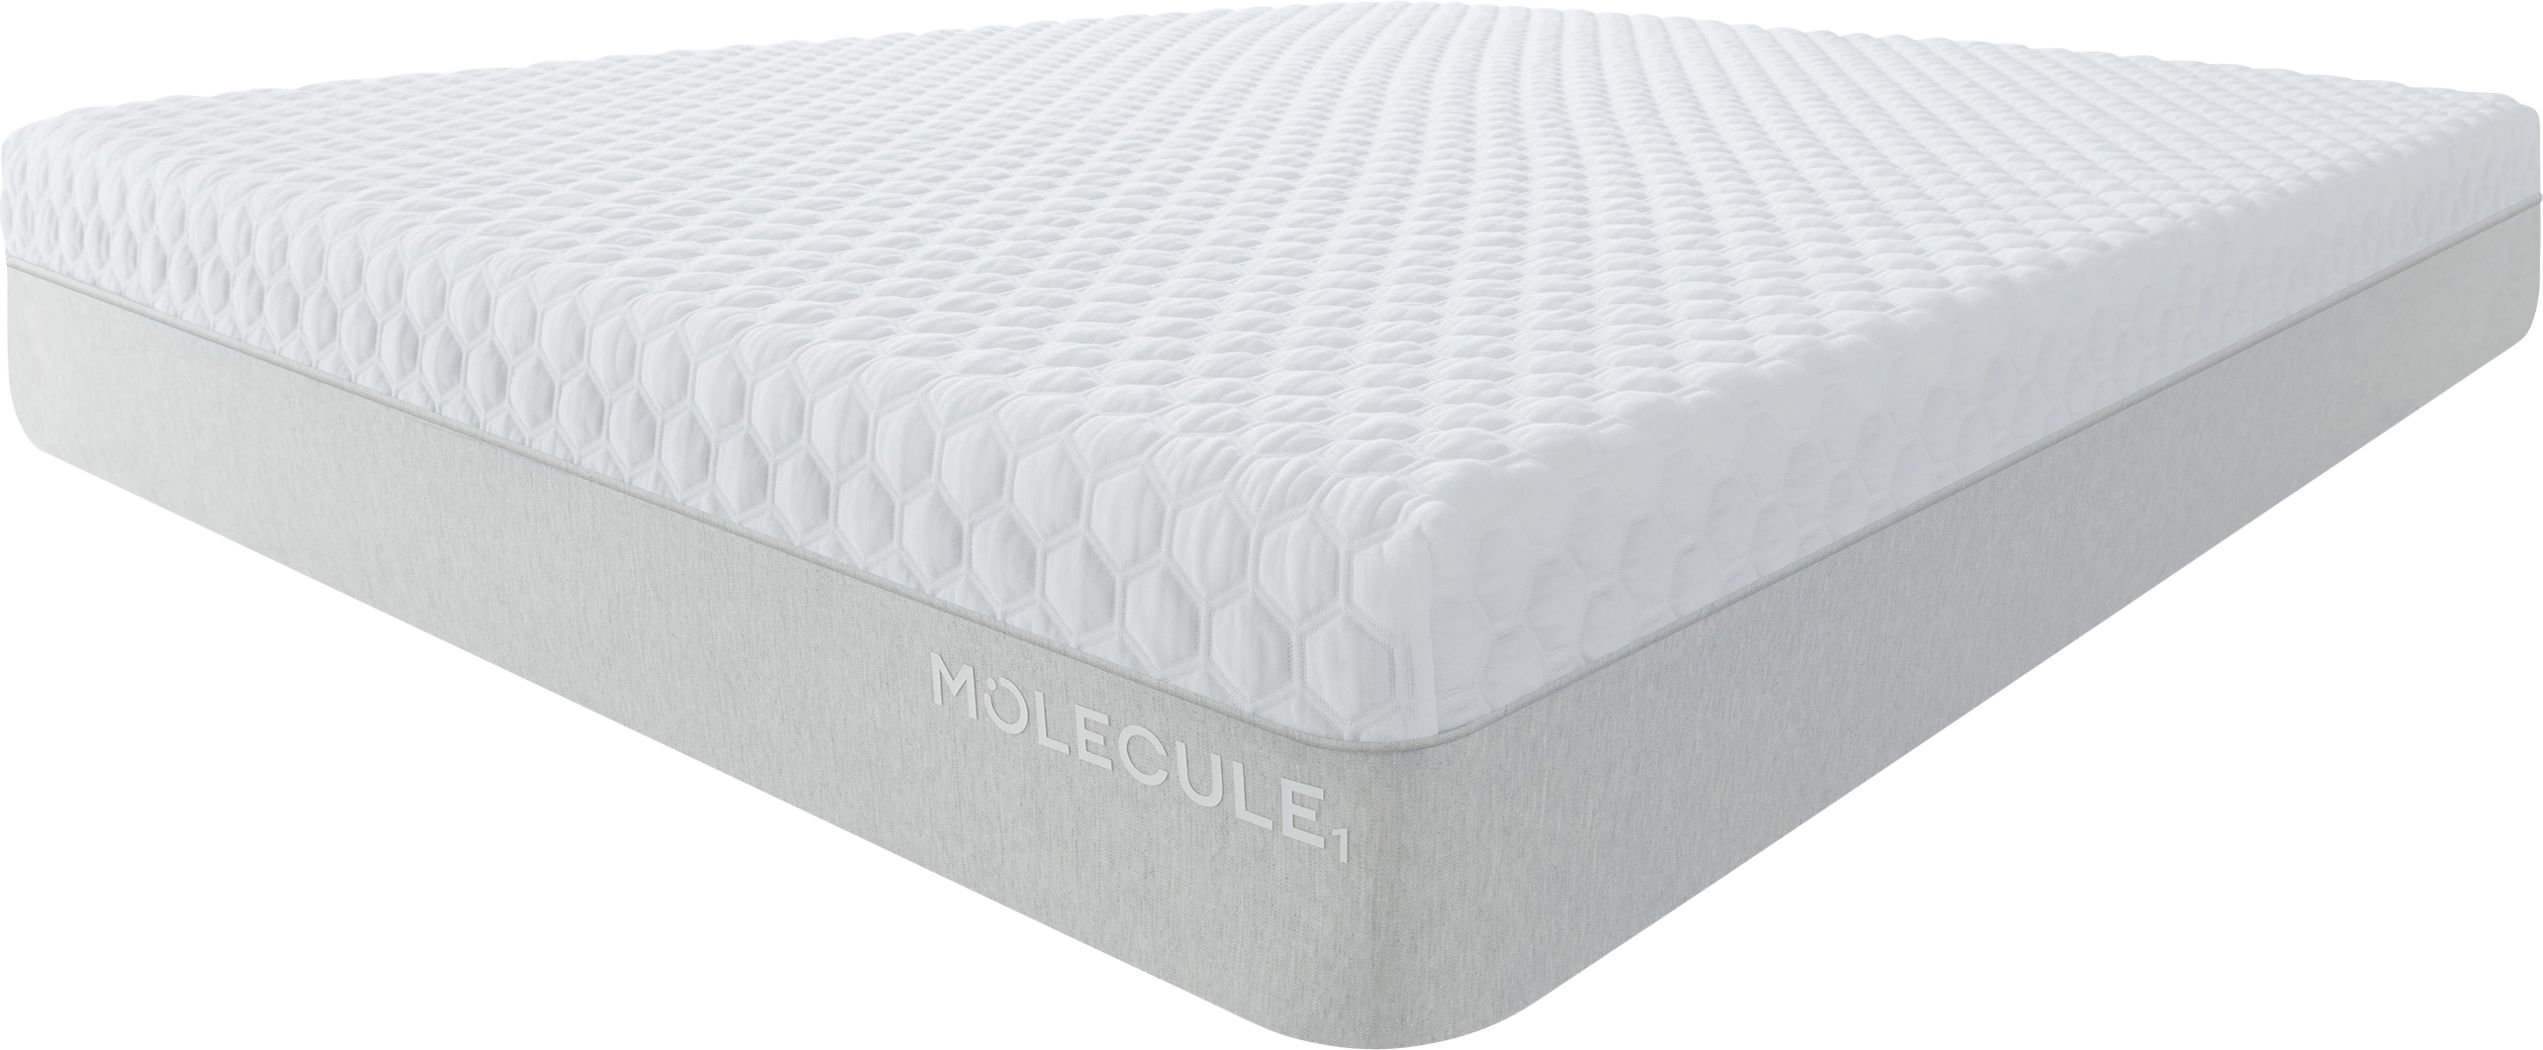 molecule 1 mattress reviews